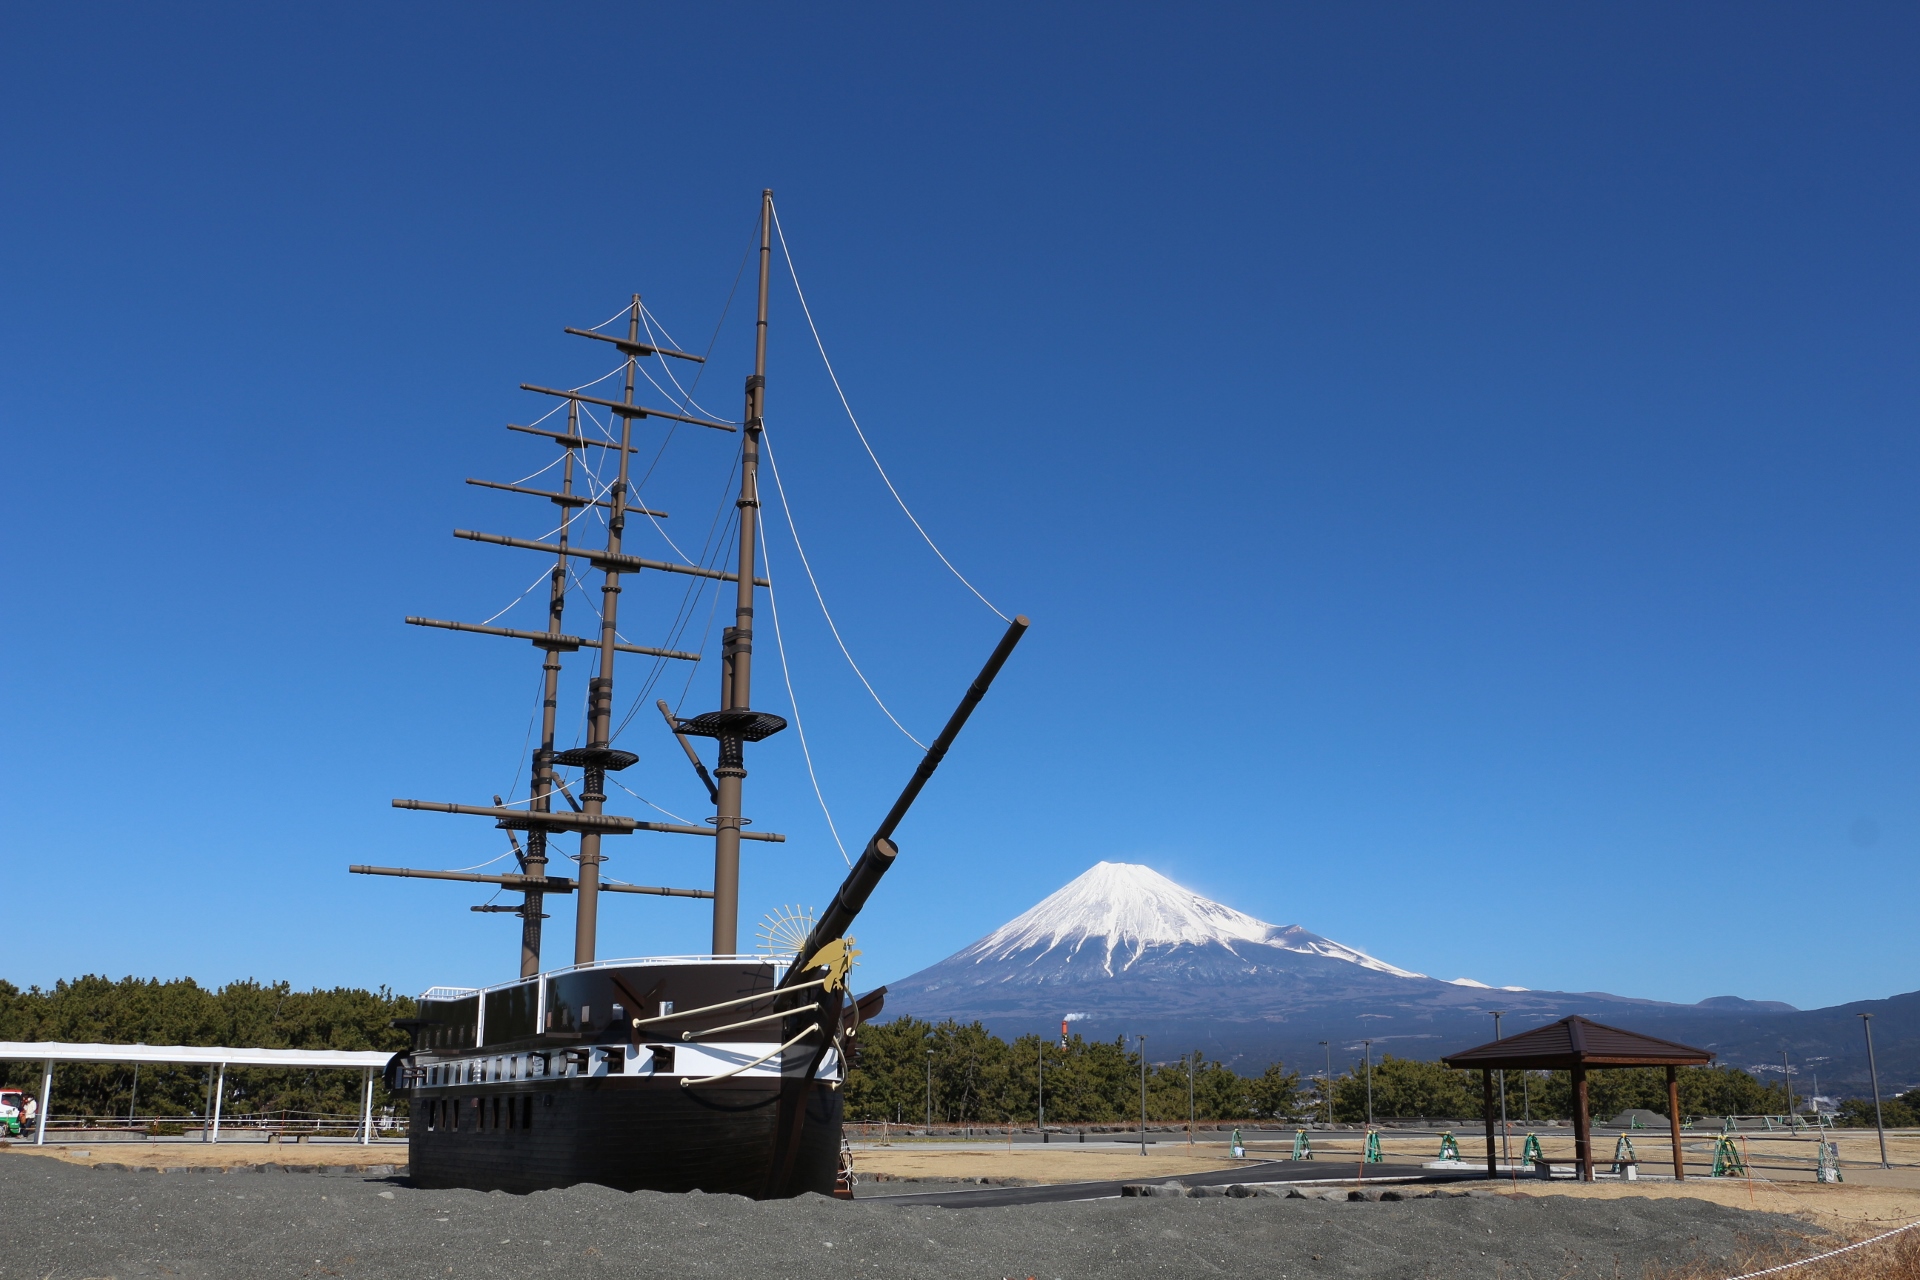 日本の風景 ロシア軍艦ディアナ号と富士山 壁紙19x1280 壁紙館